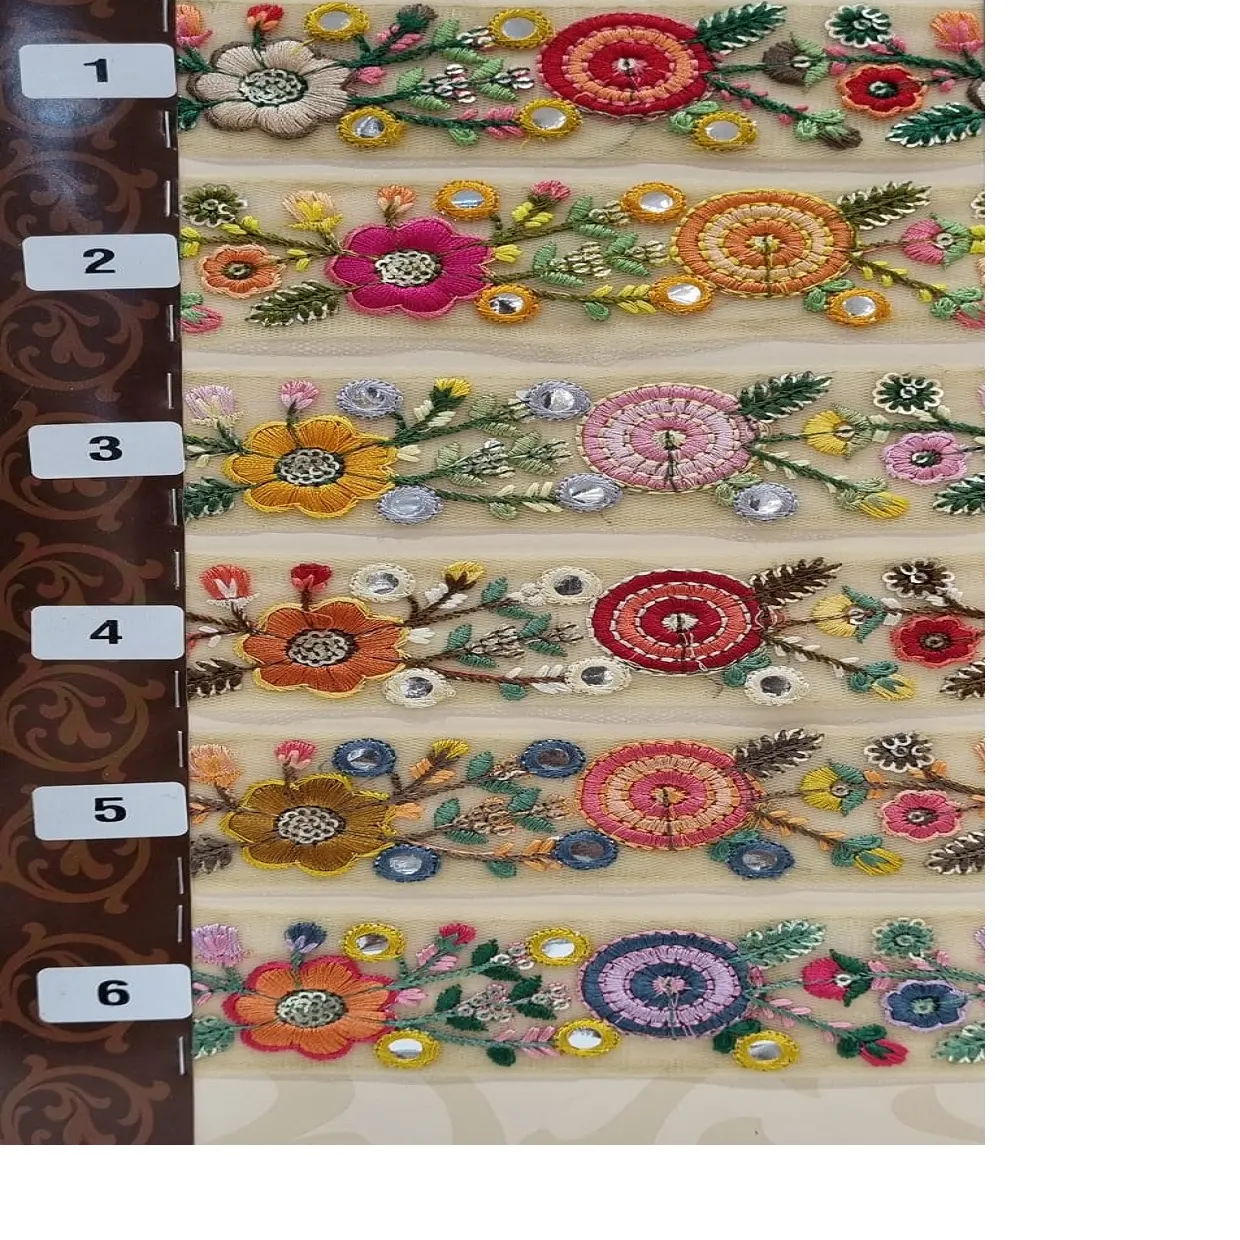 1.5インチ幅のミラーワーク刺繍のマルチカラーオプションを備えた花柄刺繍糸ワークレースでカスタムメイド